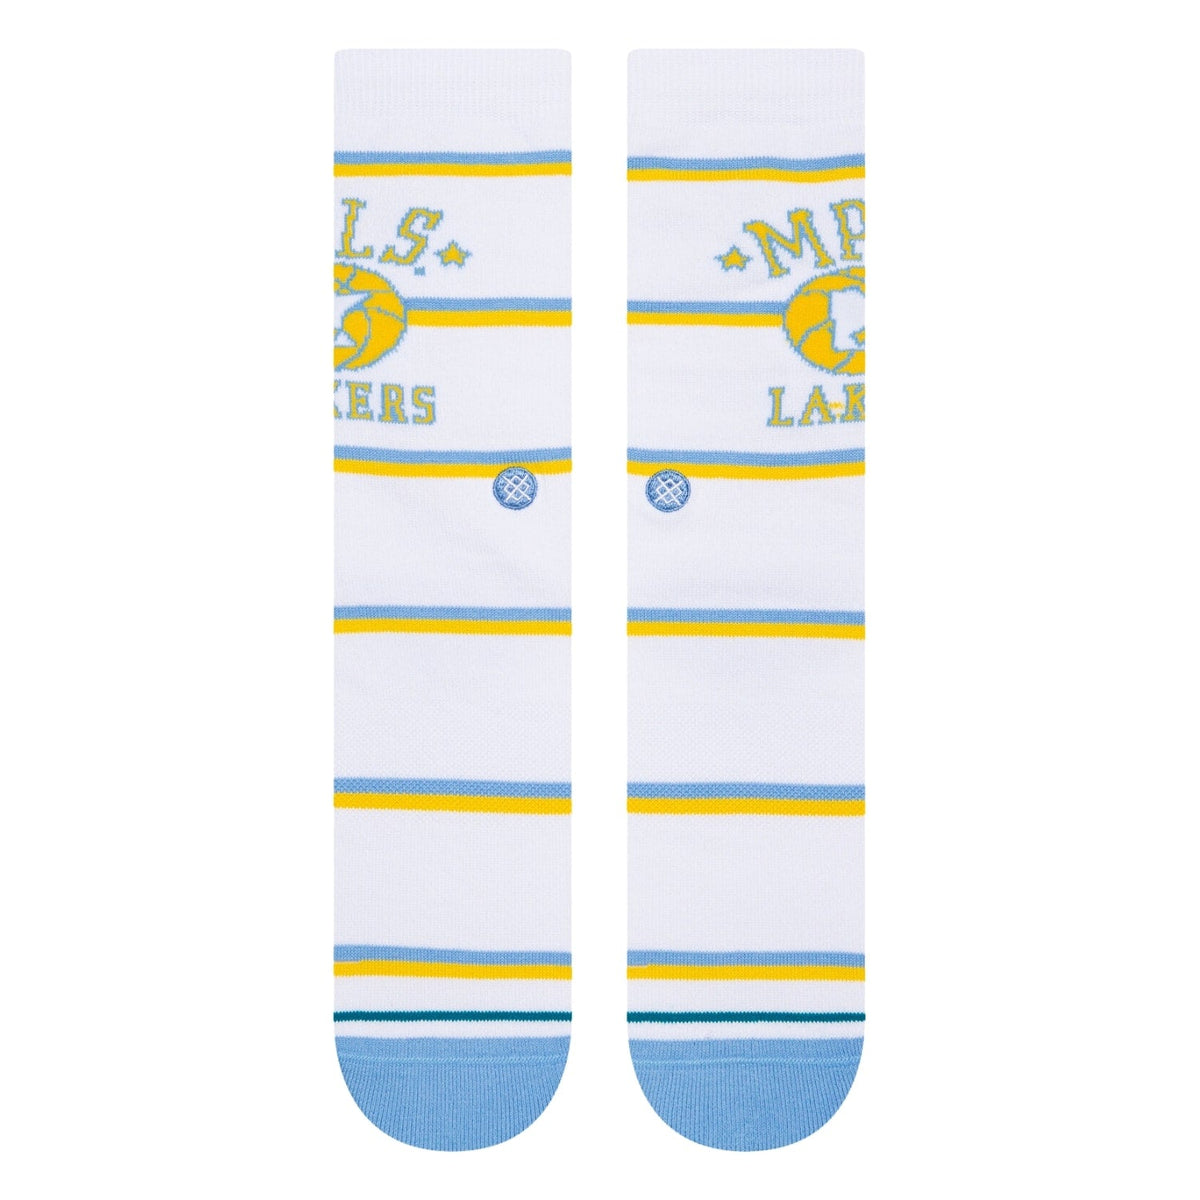 Stance Classics LA Socks - White